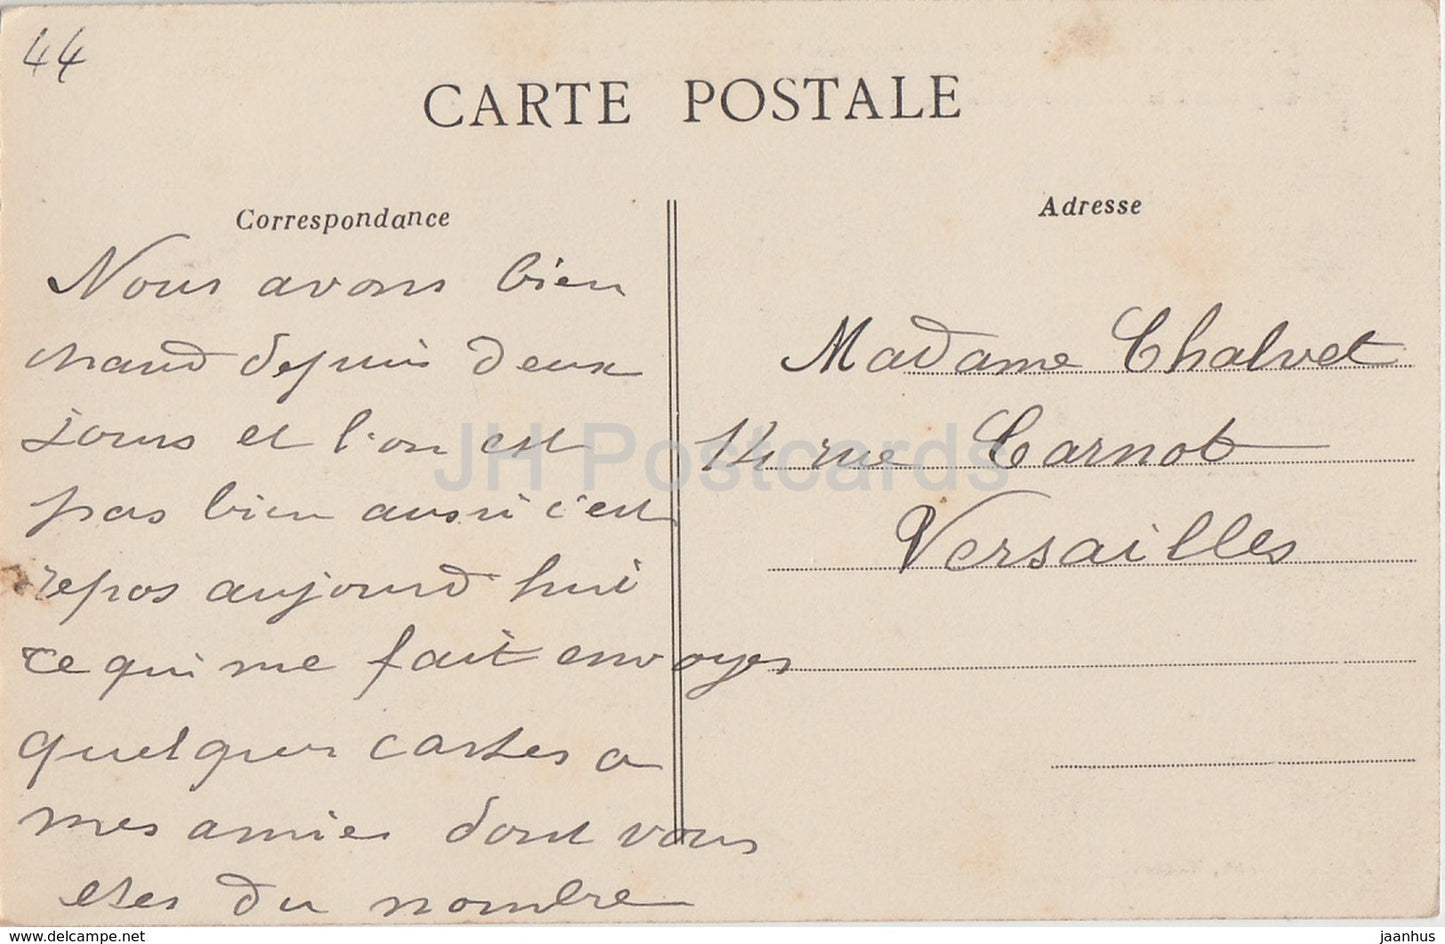 Chateau de Nantes - Le Petit Gouvernement - castle - 11 - old postcard - 1913 - France - used